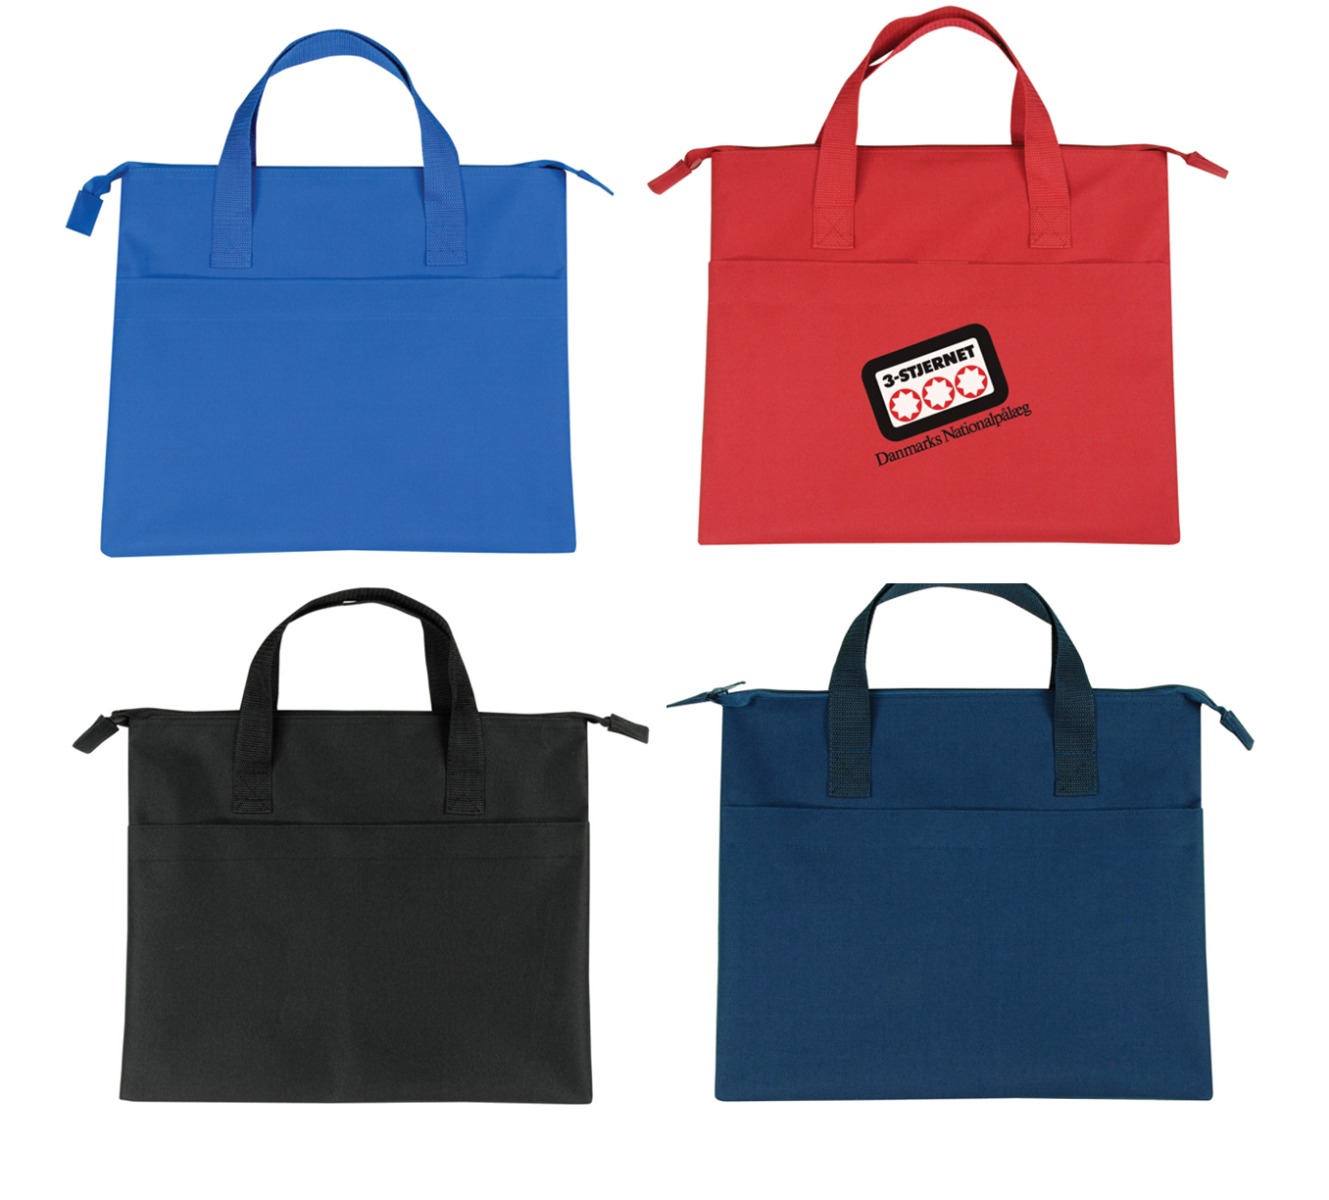 Reusable Document Bags w/ Zipper Closure - Choose Your Color(s)